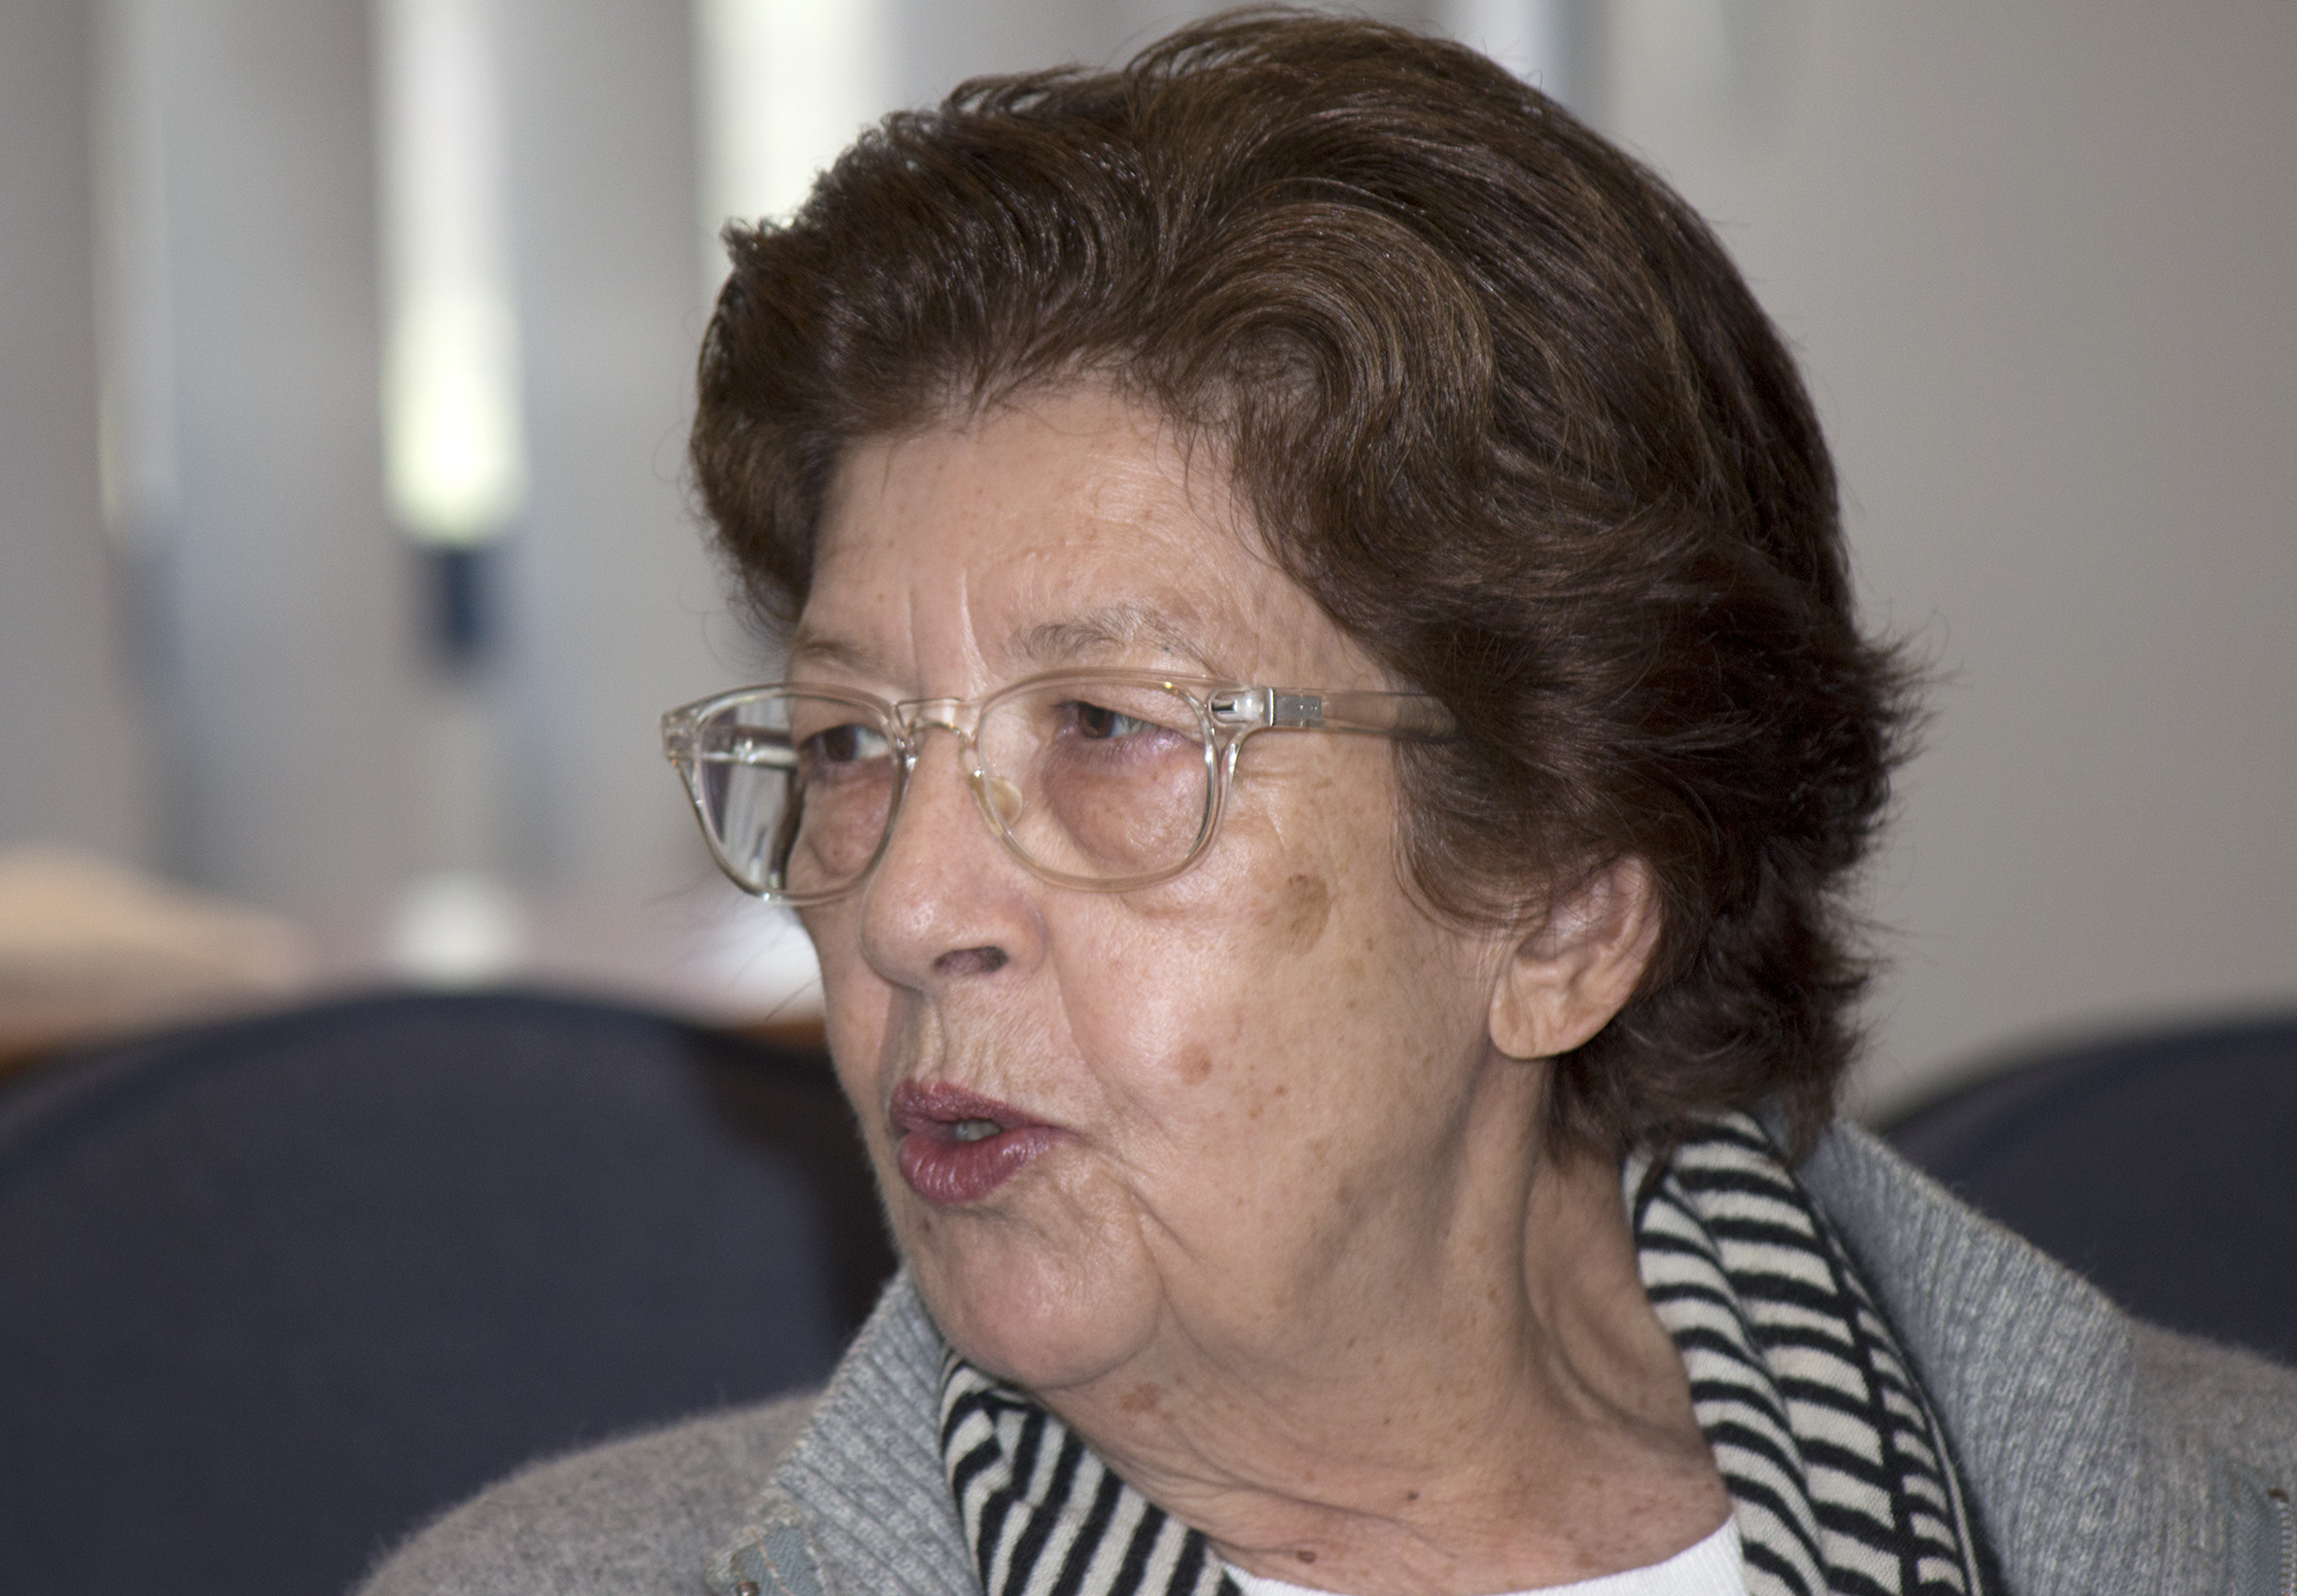 Regina Maria Salgado Campos